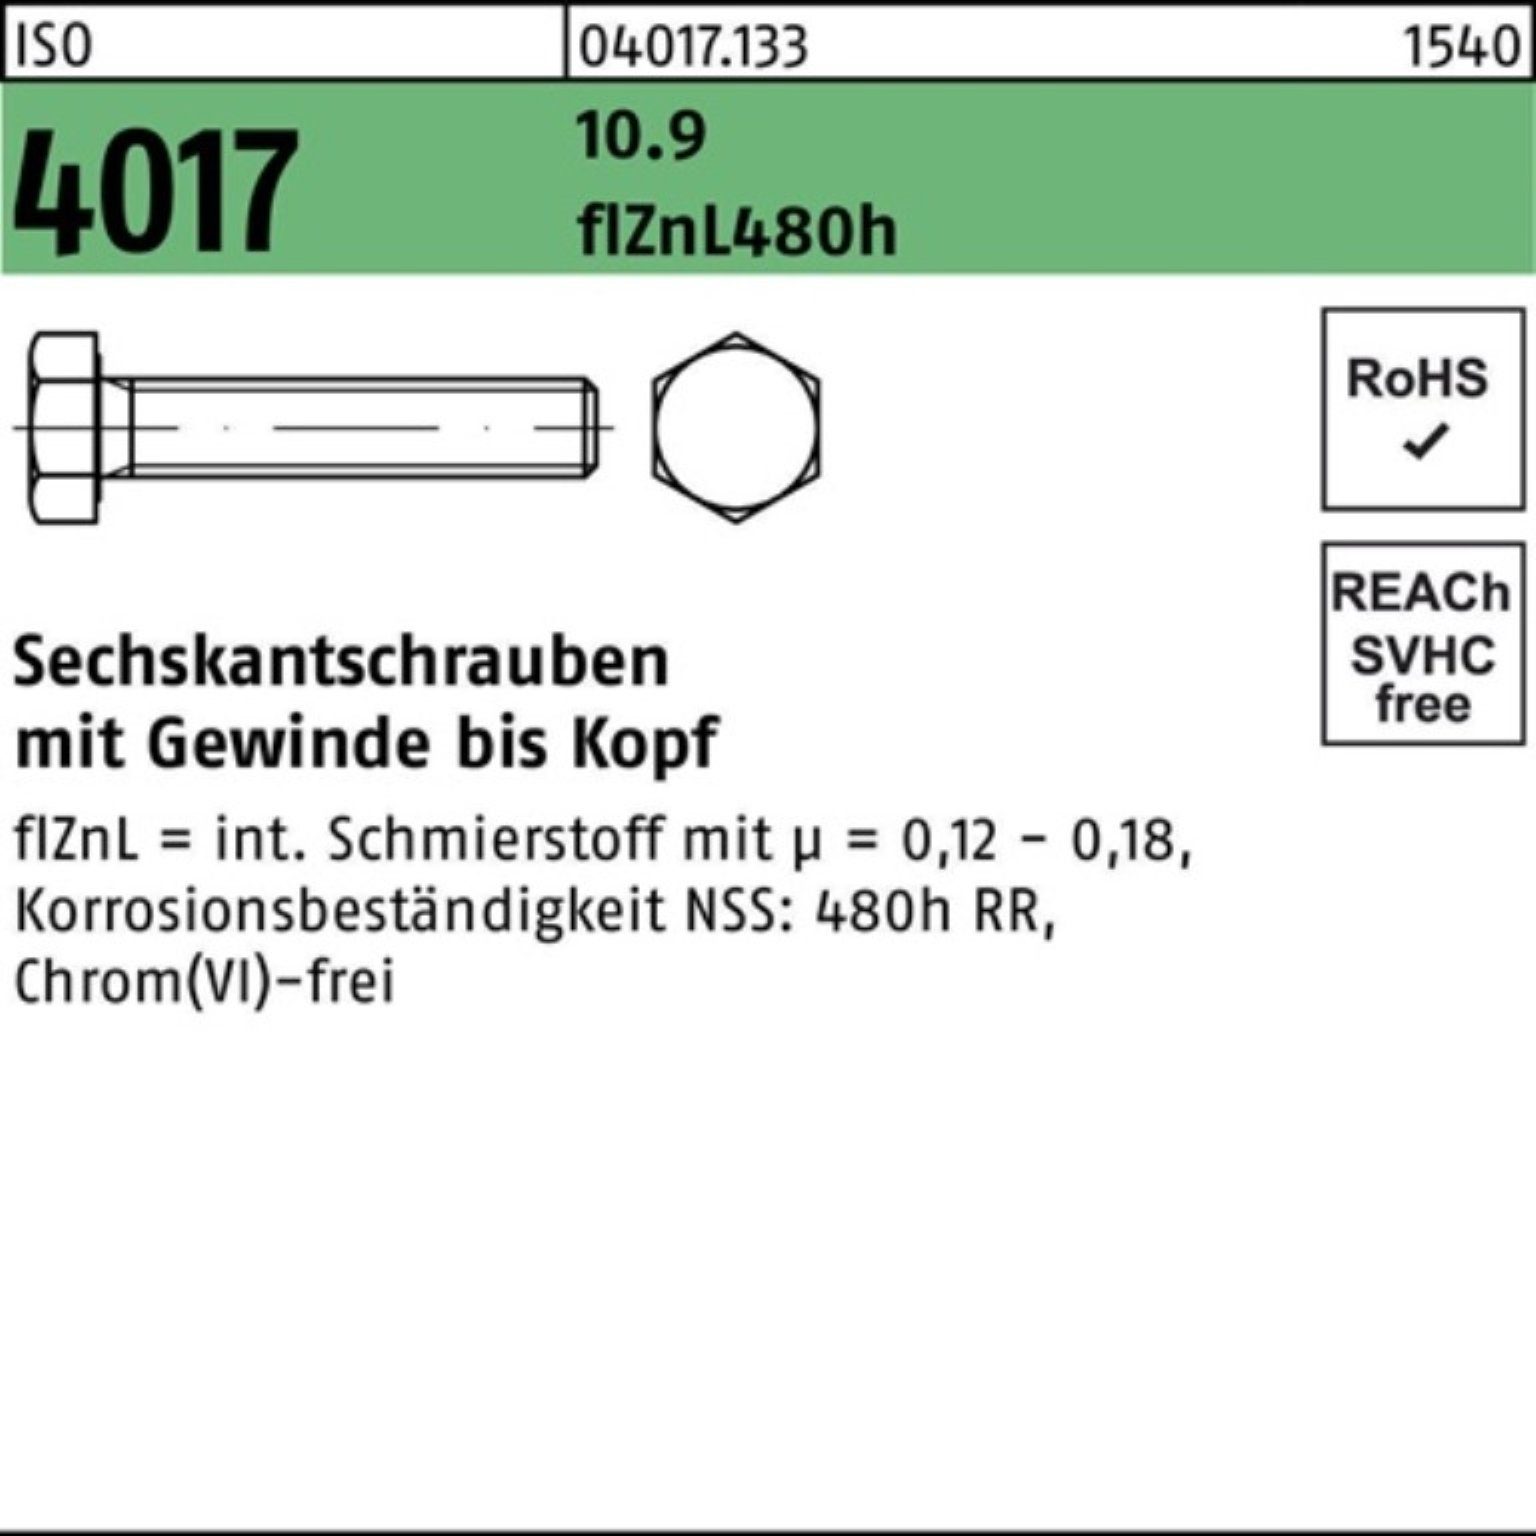 Bufab Sechskantschraube 100er Pack Sechskantschraube 10.9 zinklamellenb. M16x ISO VG 4017 60 5